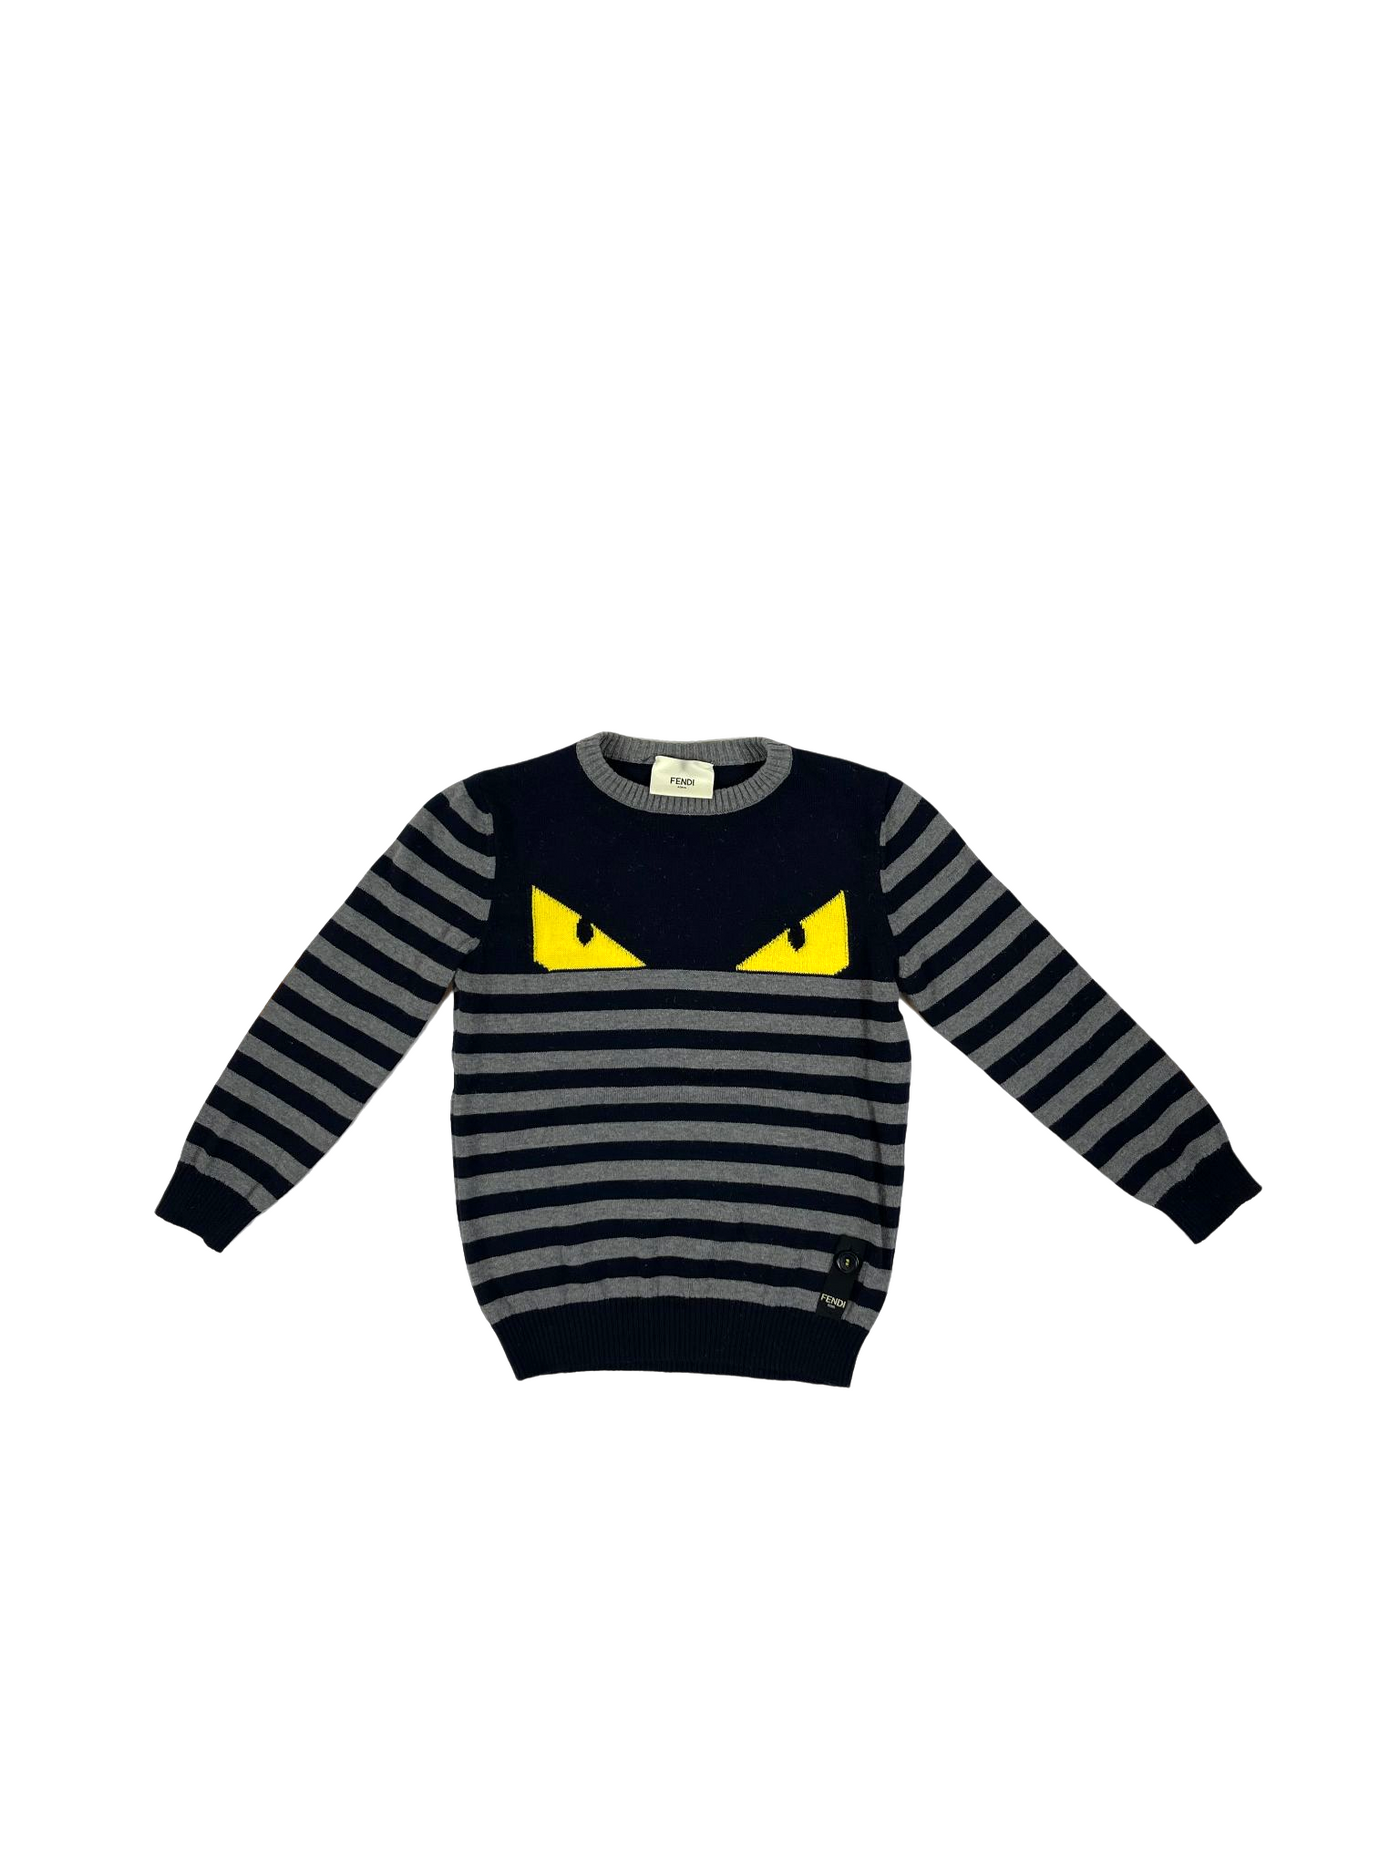 Fendi Boy Sweater (3Y)